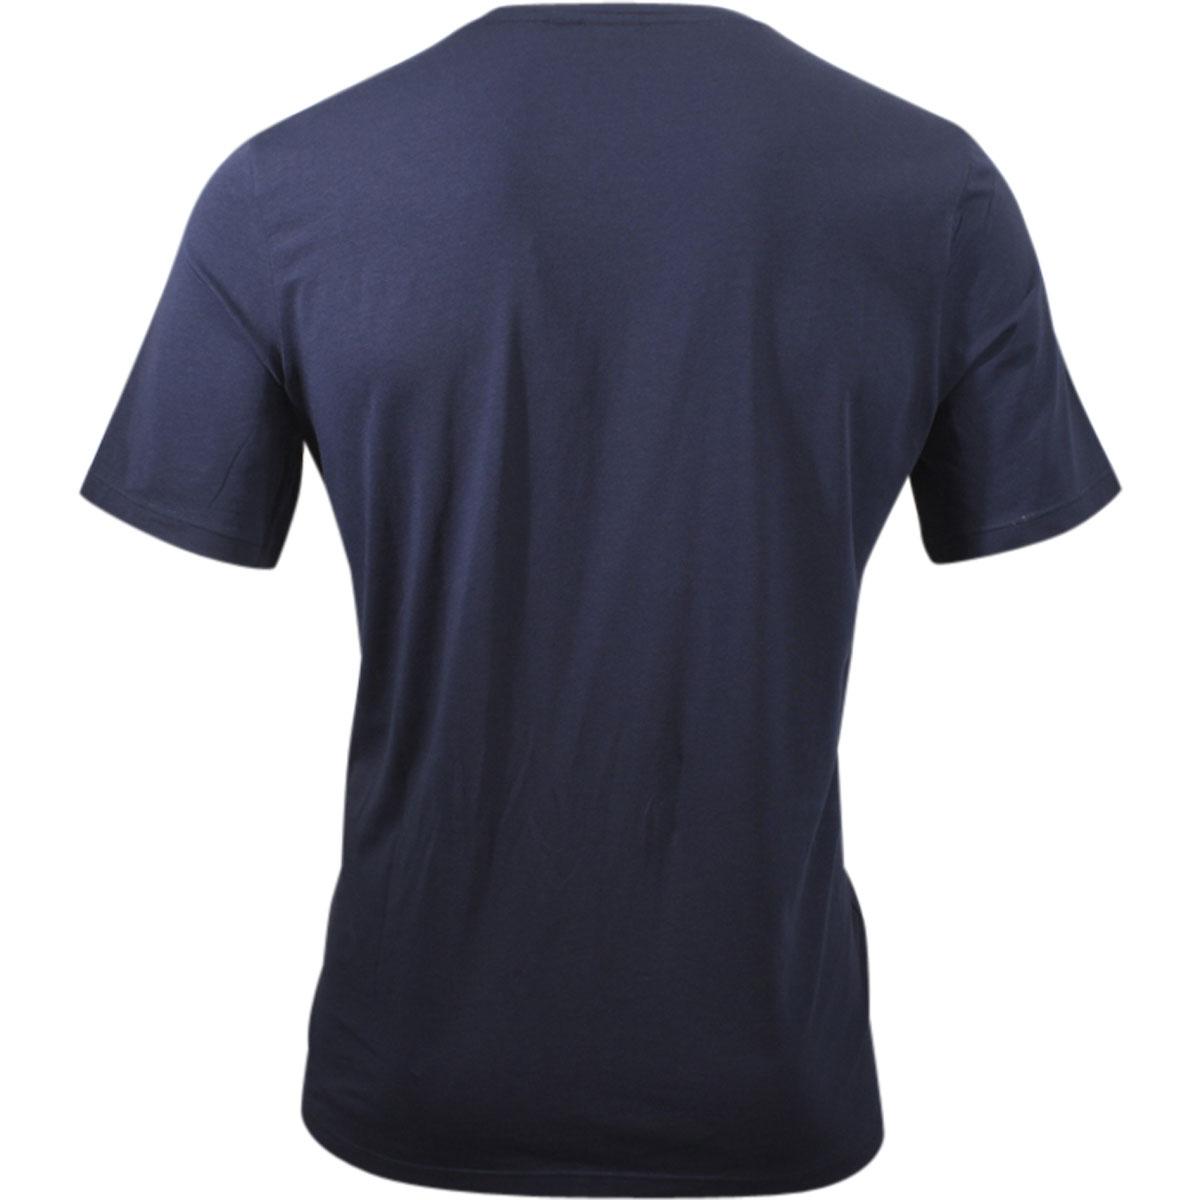 Hugo Boss Men's Mix & Match Crew Neck Short Sleeve Loungewear T-Shirt ...